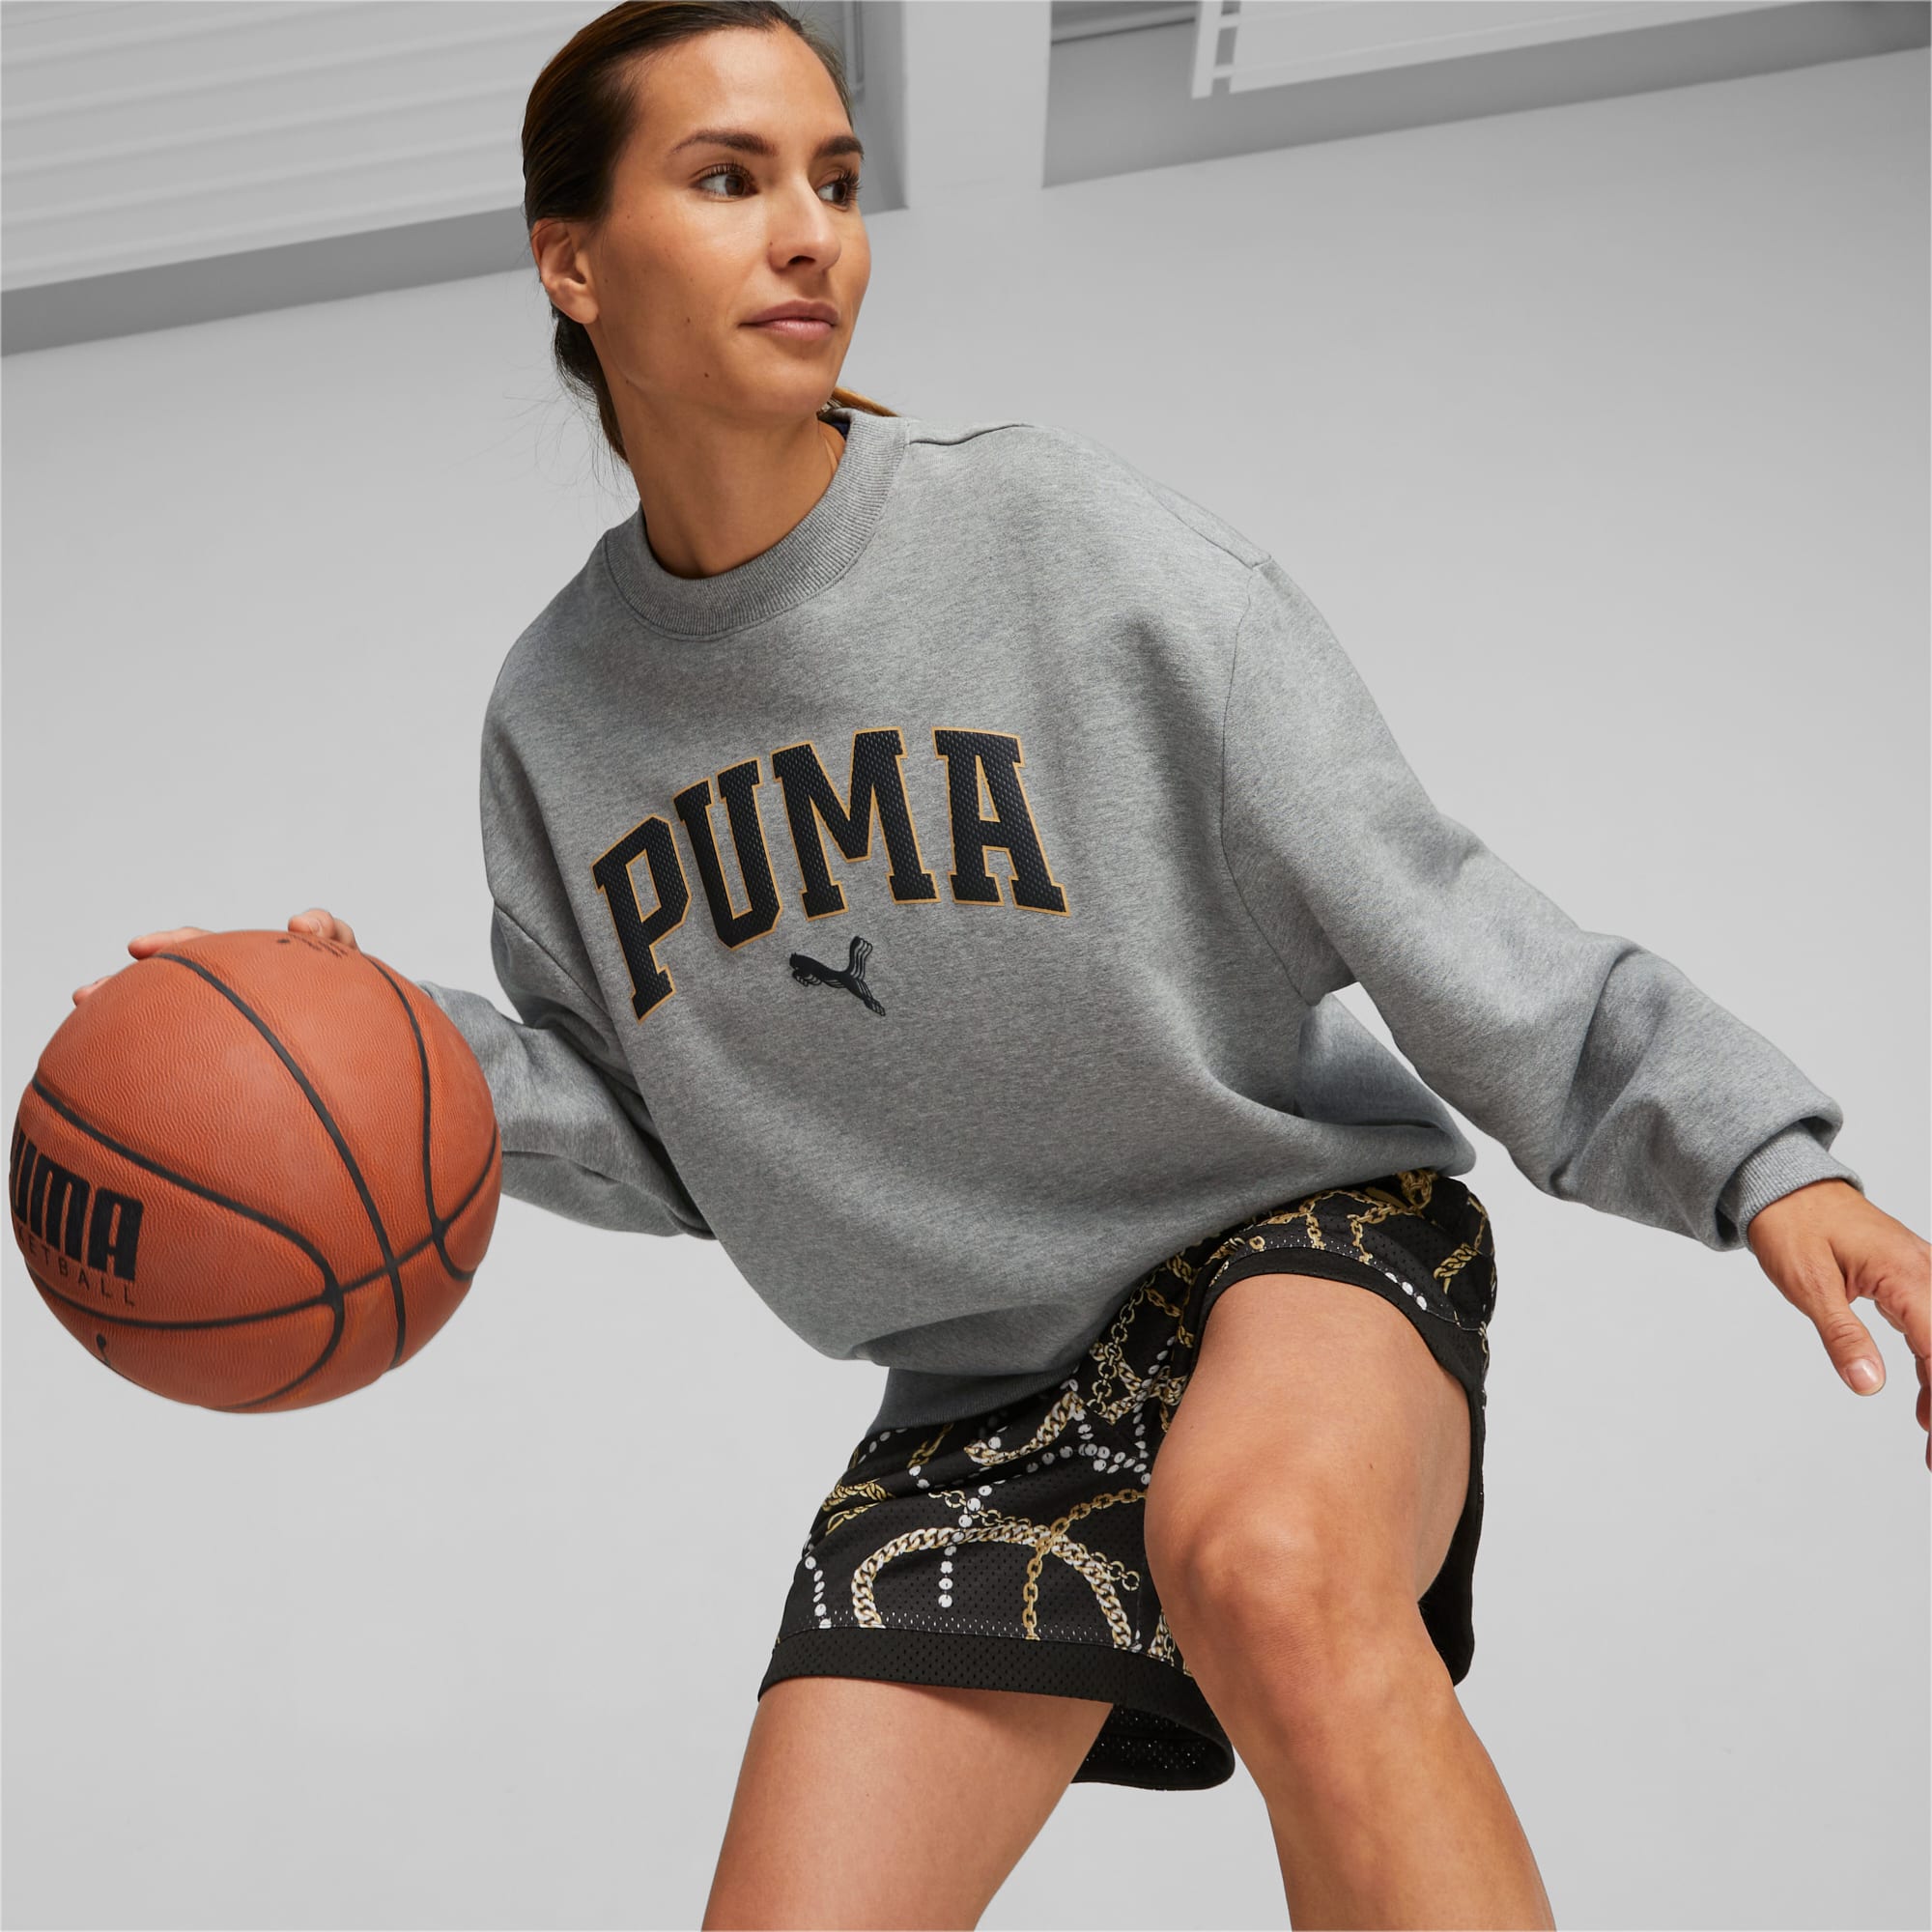 PUMA Sweat De Basketball Gold Standard Femme, Gris/Bruyère